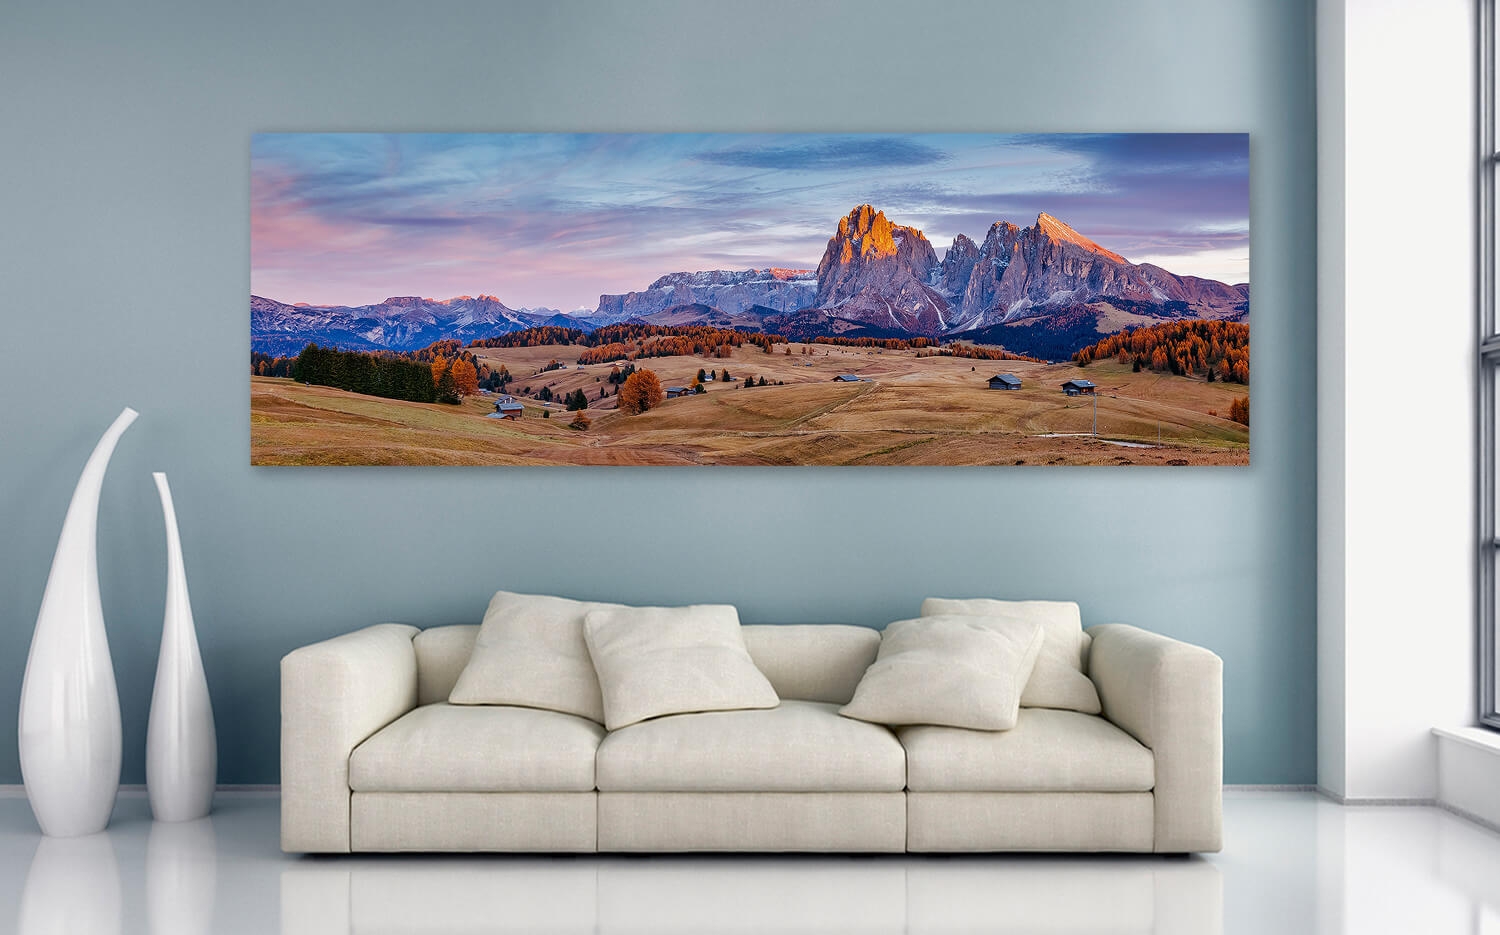 40cm Grösse Wandbild Leinwand Küchenspiegel o. x (3:1) Alm Canvas Seiser Ausführung herbstliche 120 Südtirol